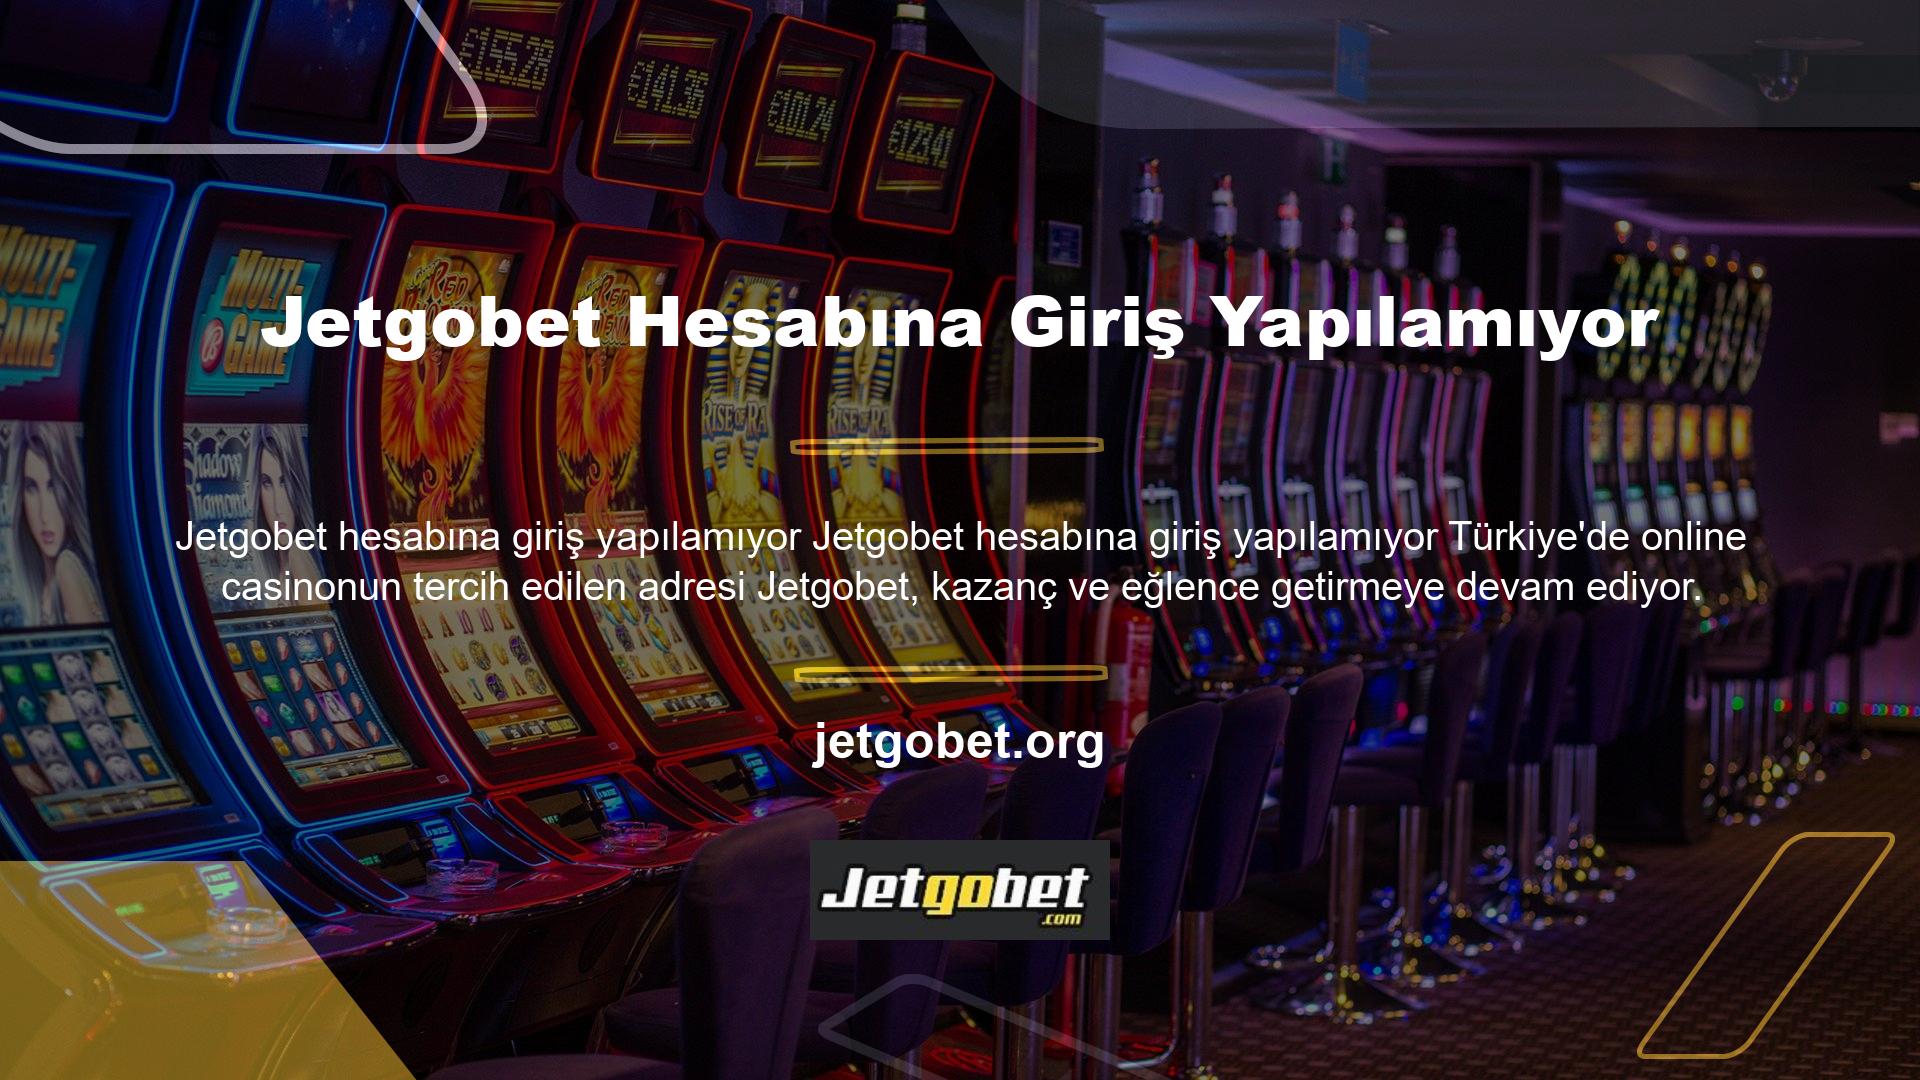 Jetgobet, yüksek bahis oranları, kazançlı ve eğlenceli casino oyunlarıyla her zaman dikkat çekmiş ve özellikle bonus promosyonlarıyla müşterilerini memnun etmeye devam etmektedir